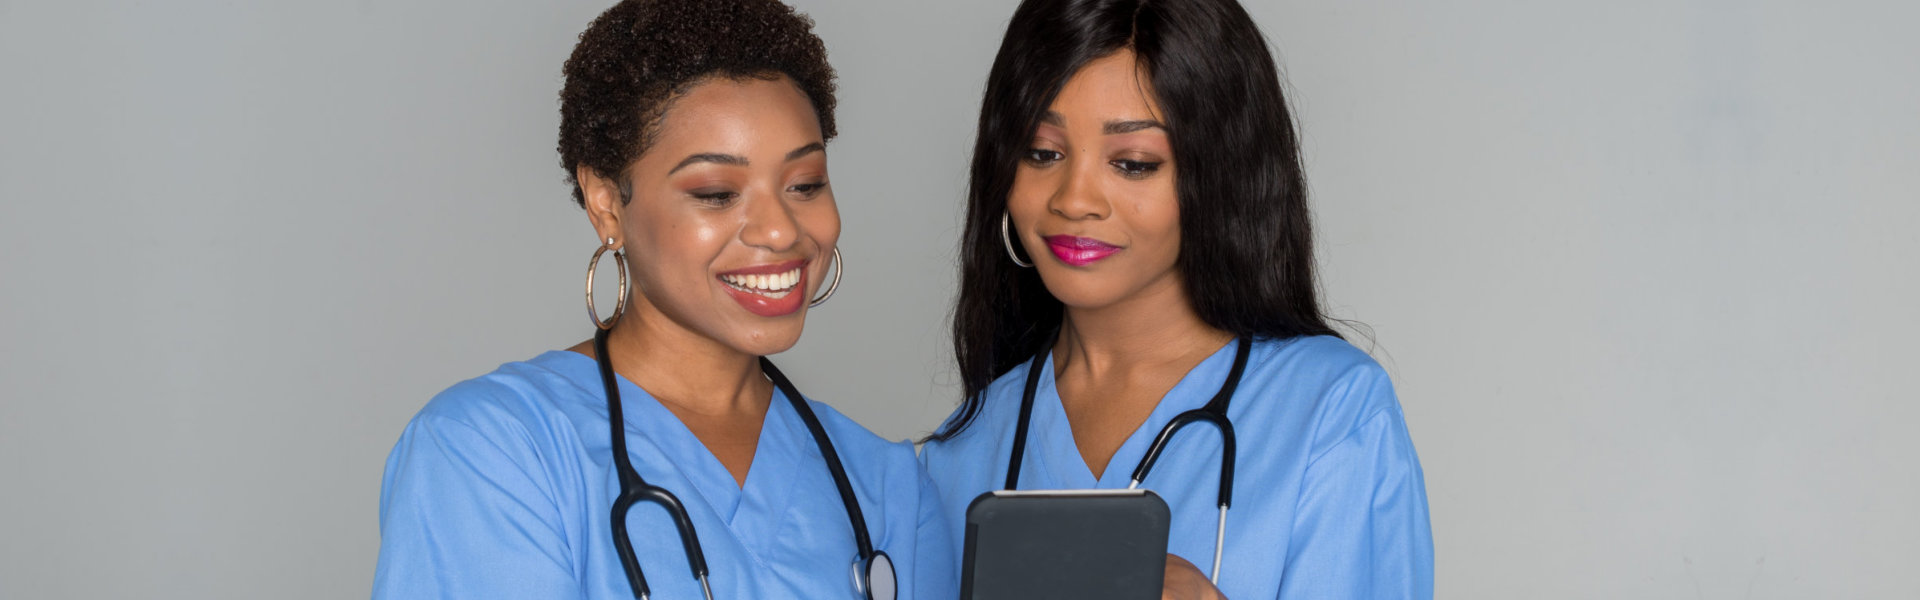 two nurse smiling